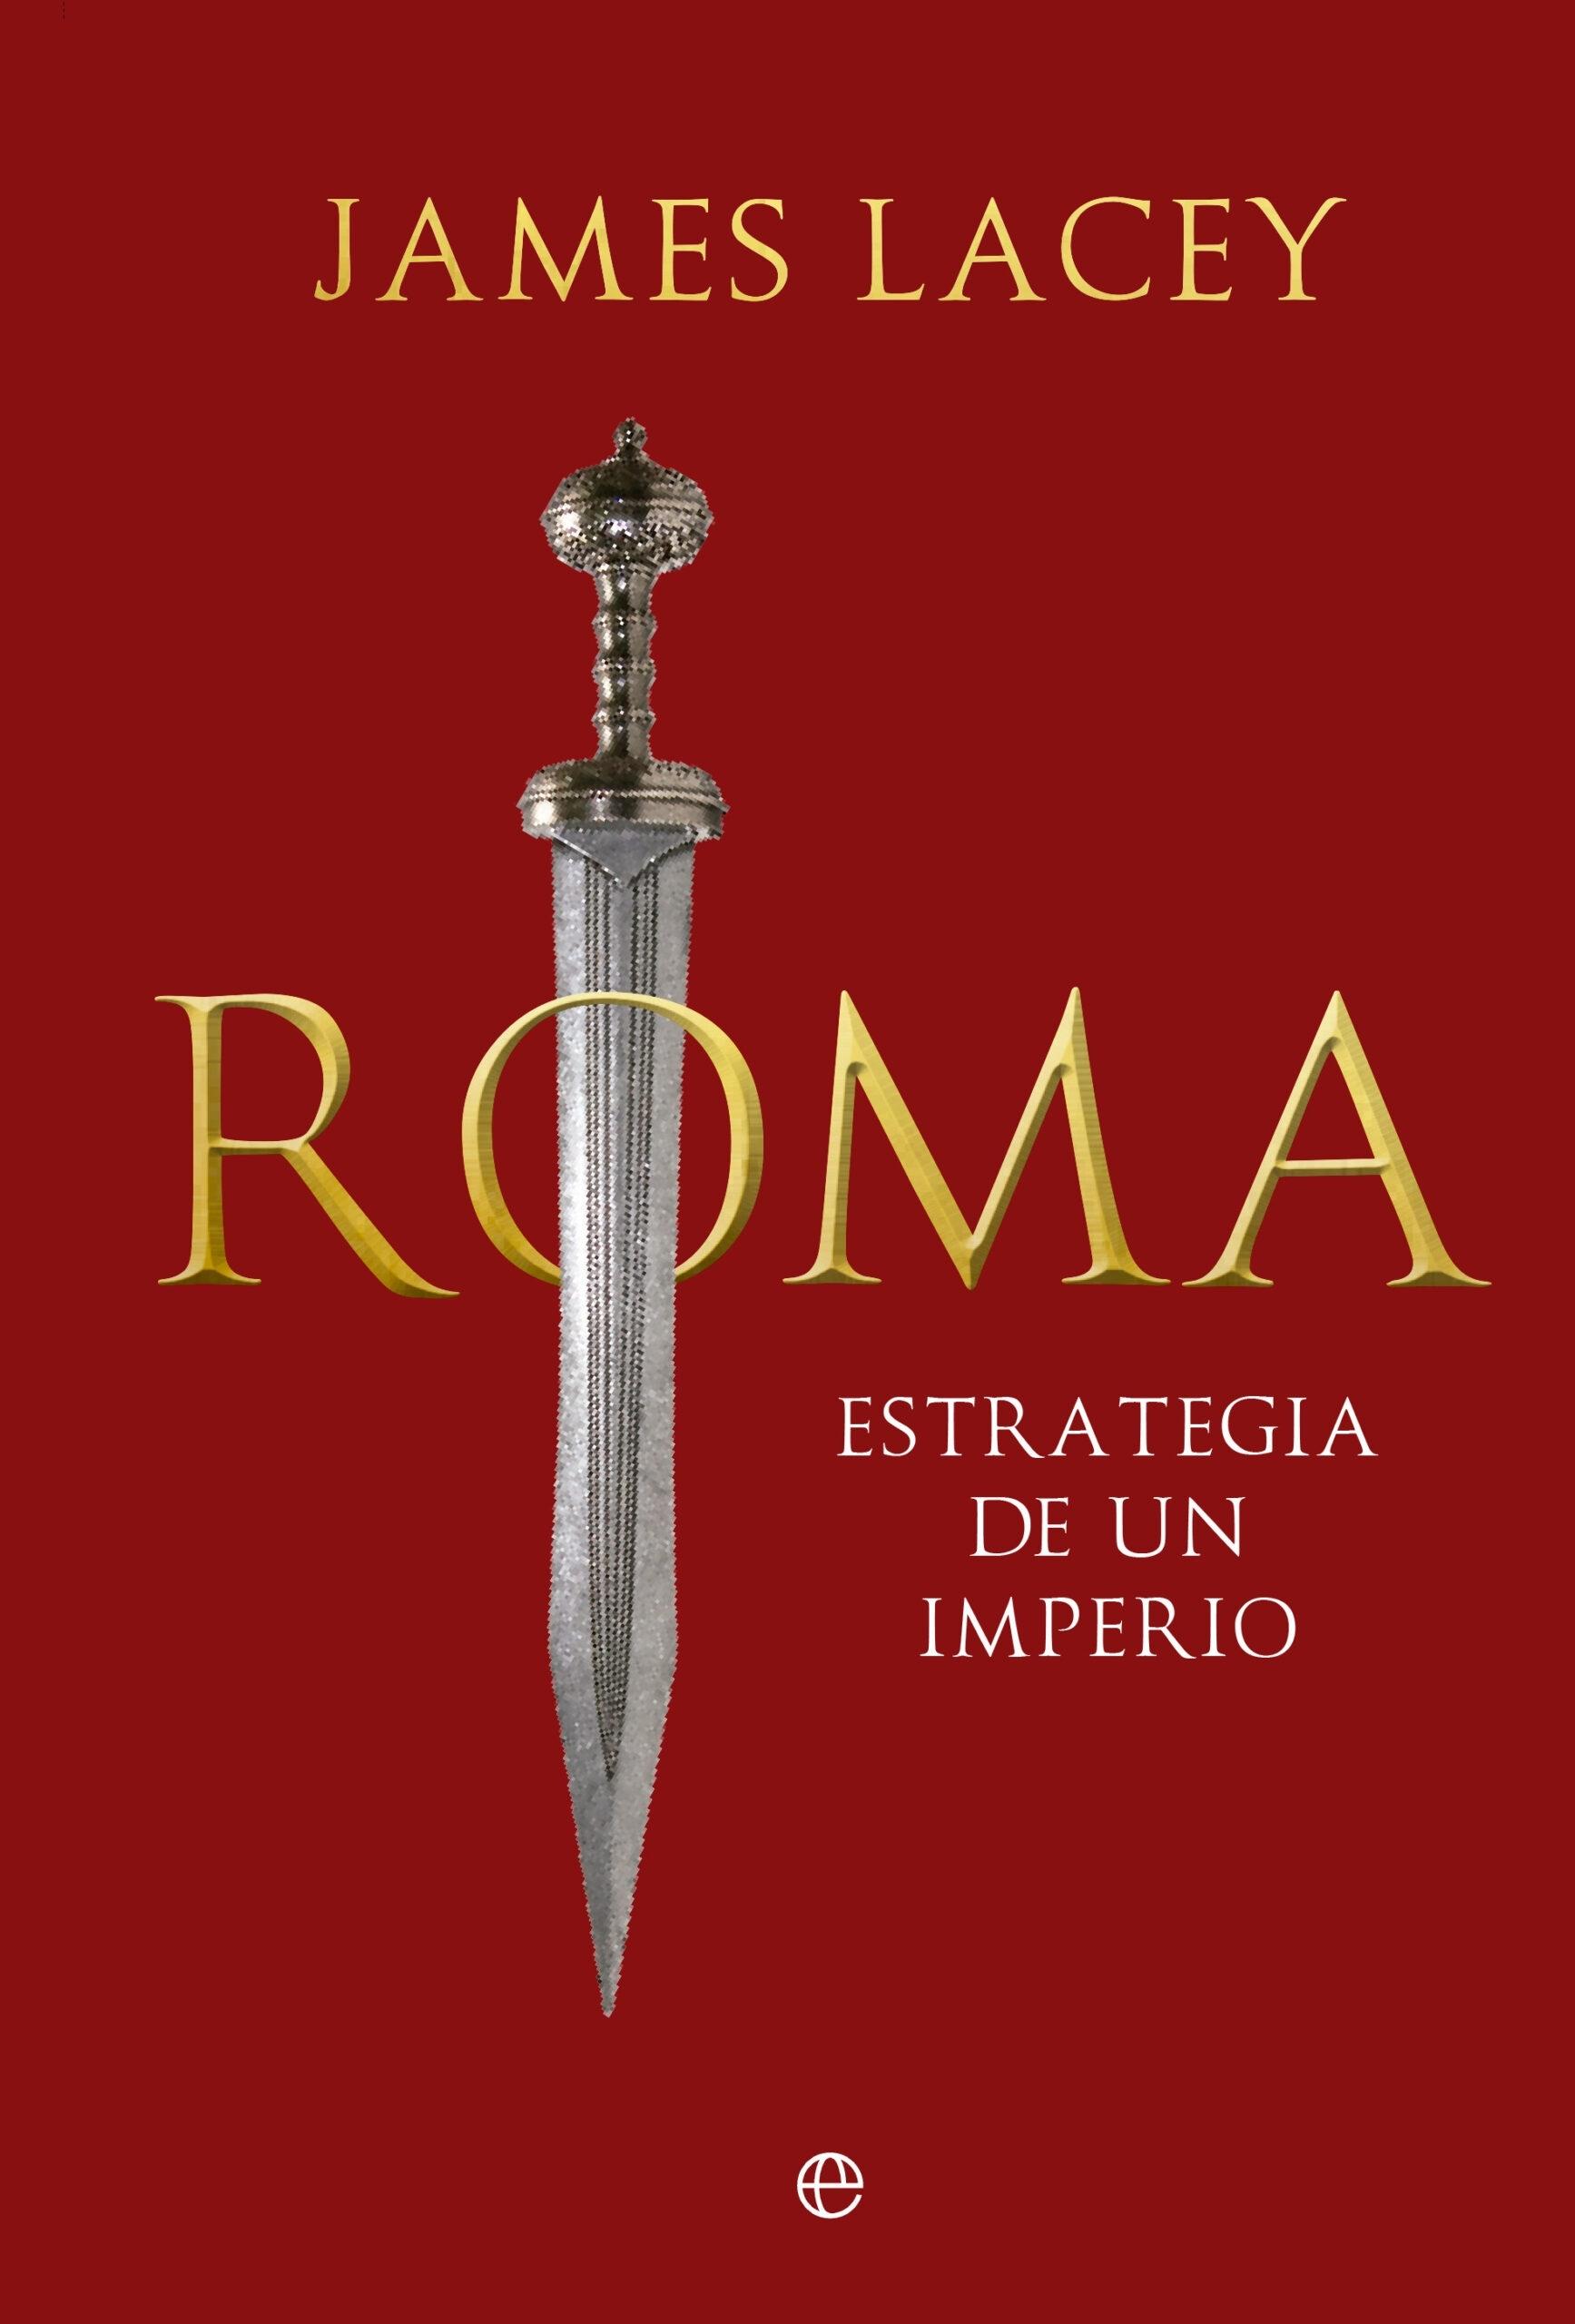 Roma, Estrategia de un Imperio "Tragedia de un Imperio"